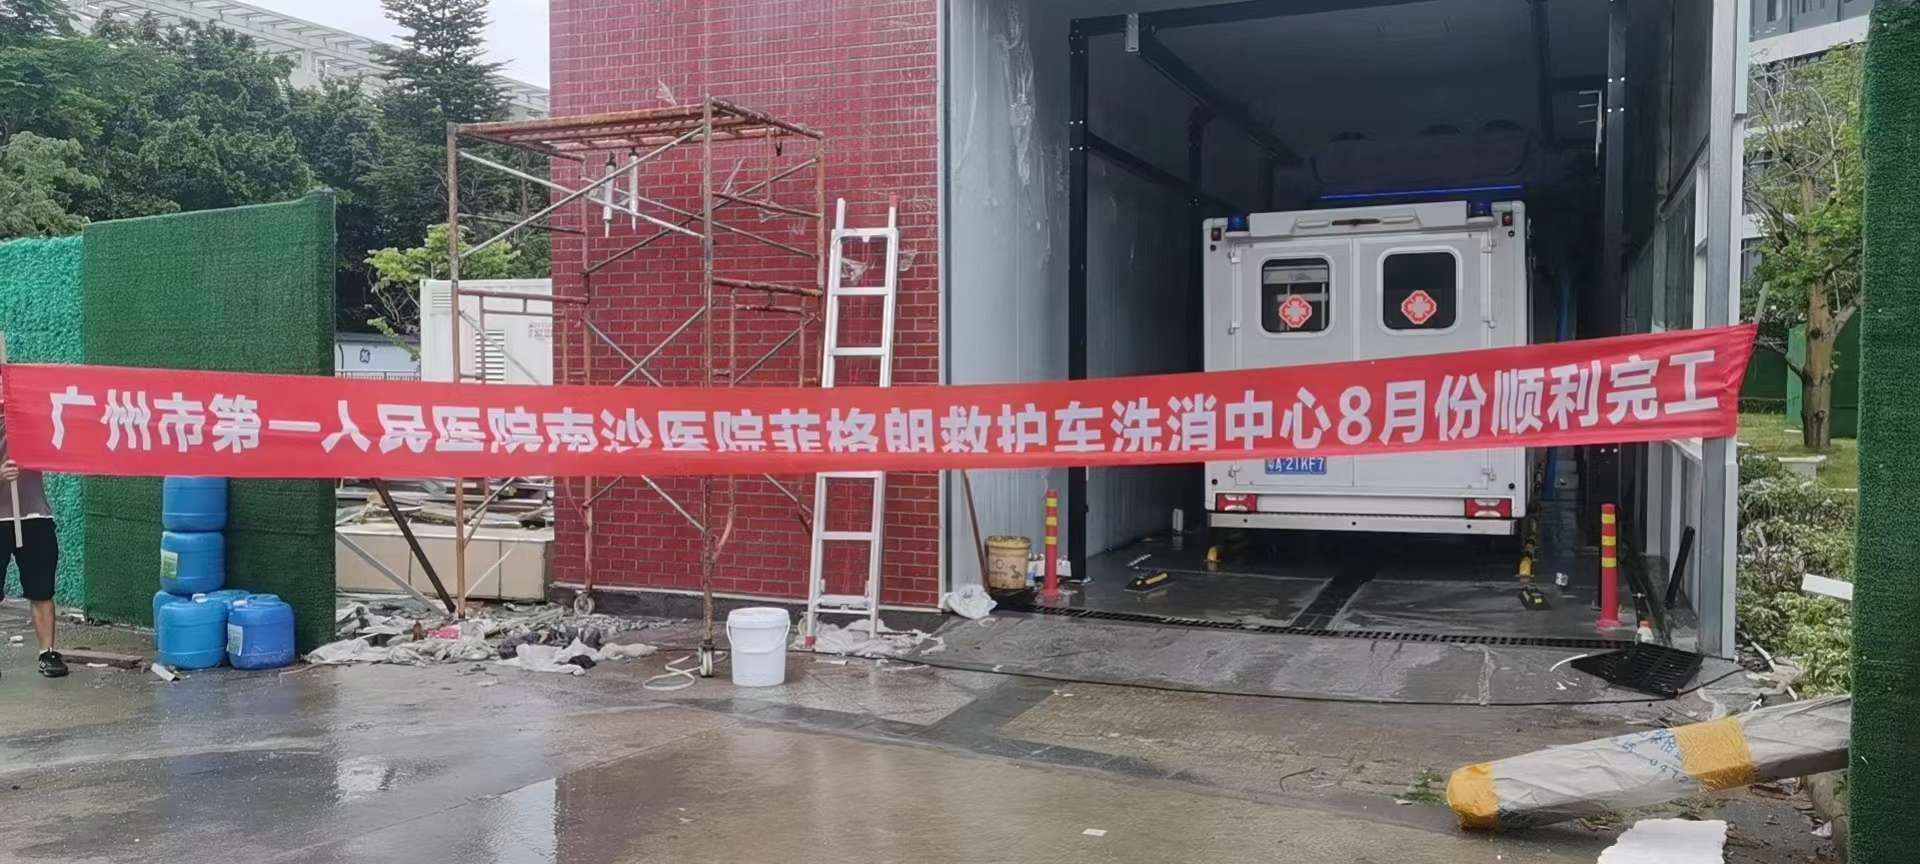 广州市第一人民医院菲格朗救护车